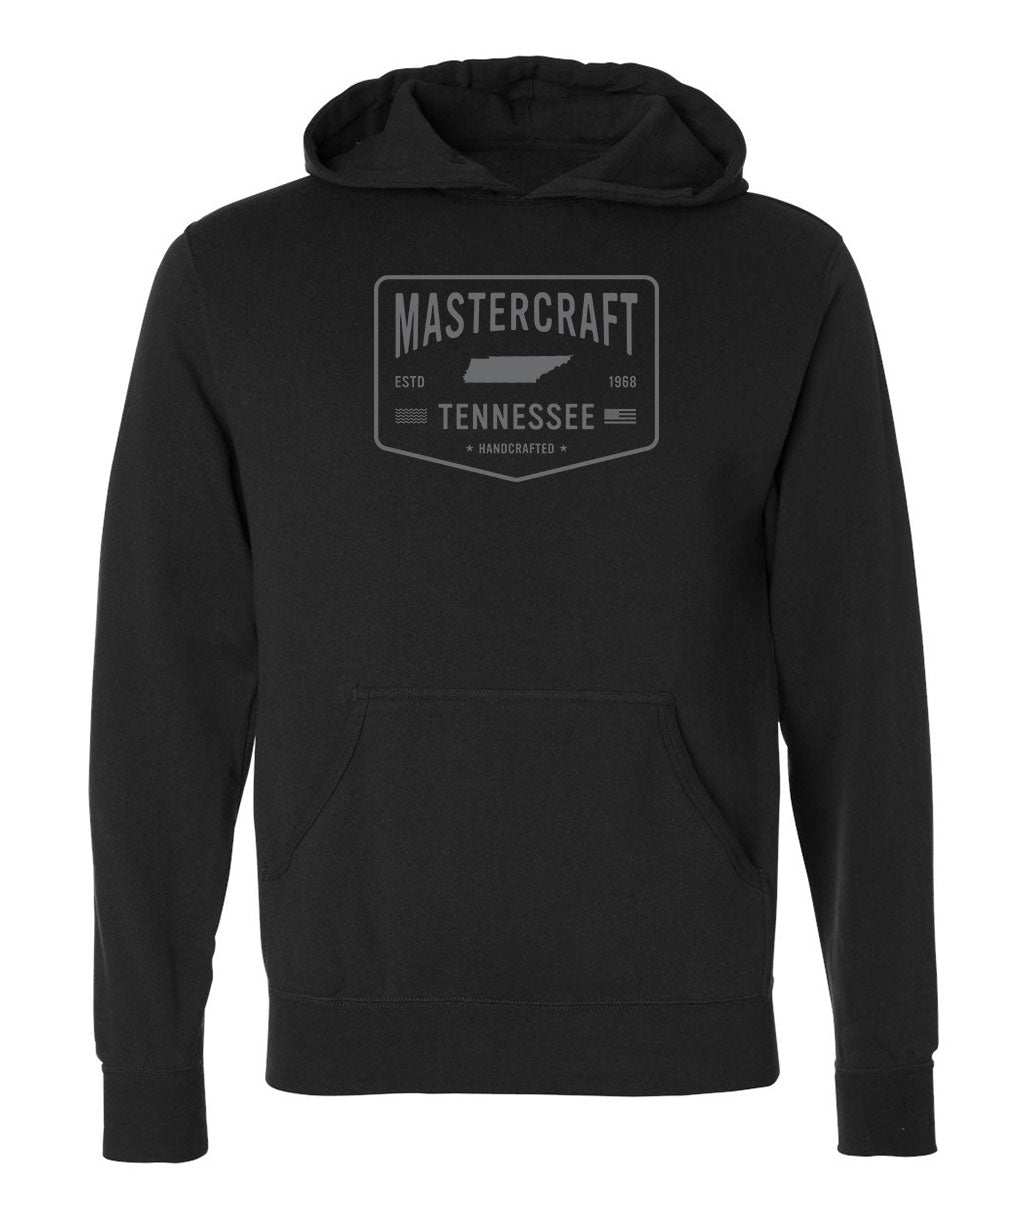 MasterCraft Handcrafted Men's Hooded Sweatshirt